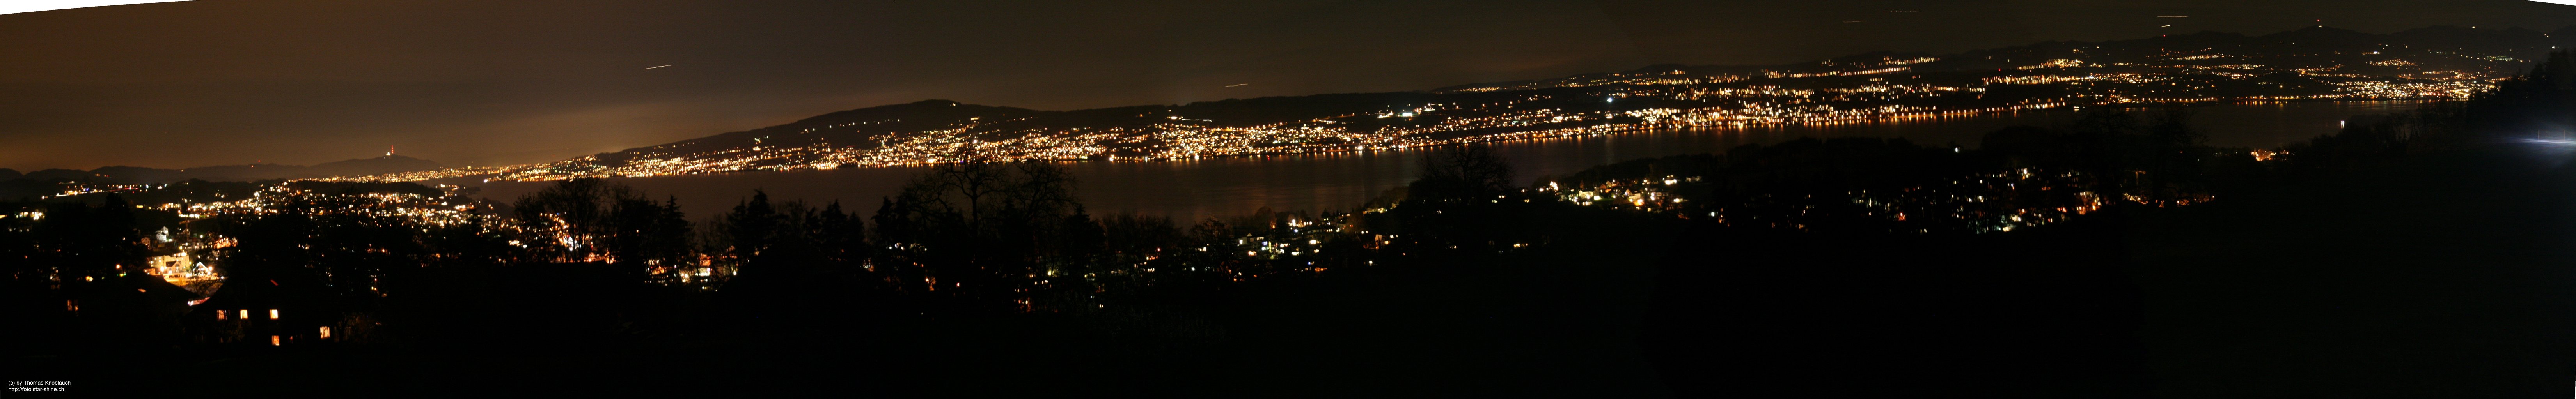 2006-11-22 - Zürichsee-Panorama mit Lichter, nachts